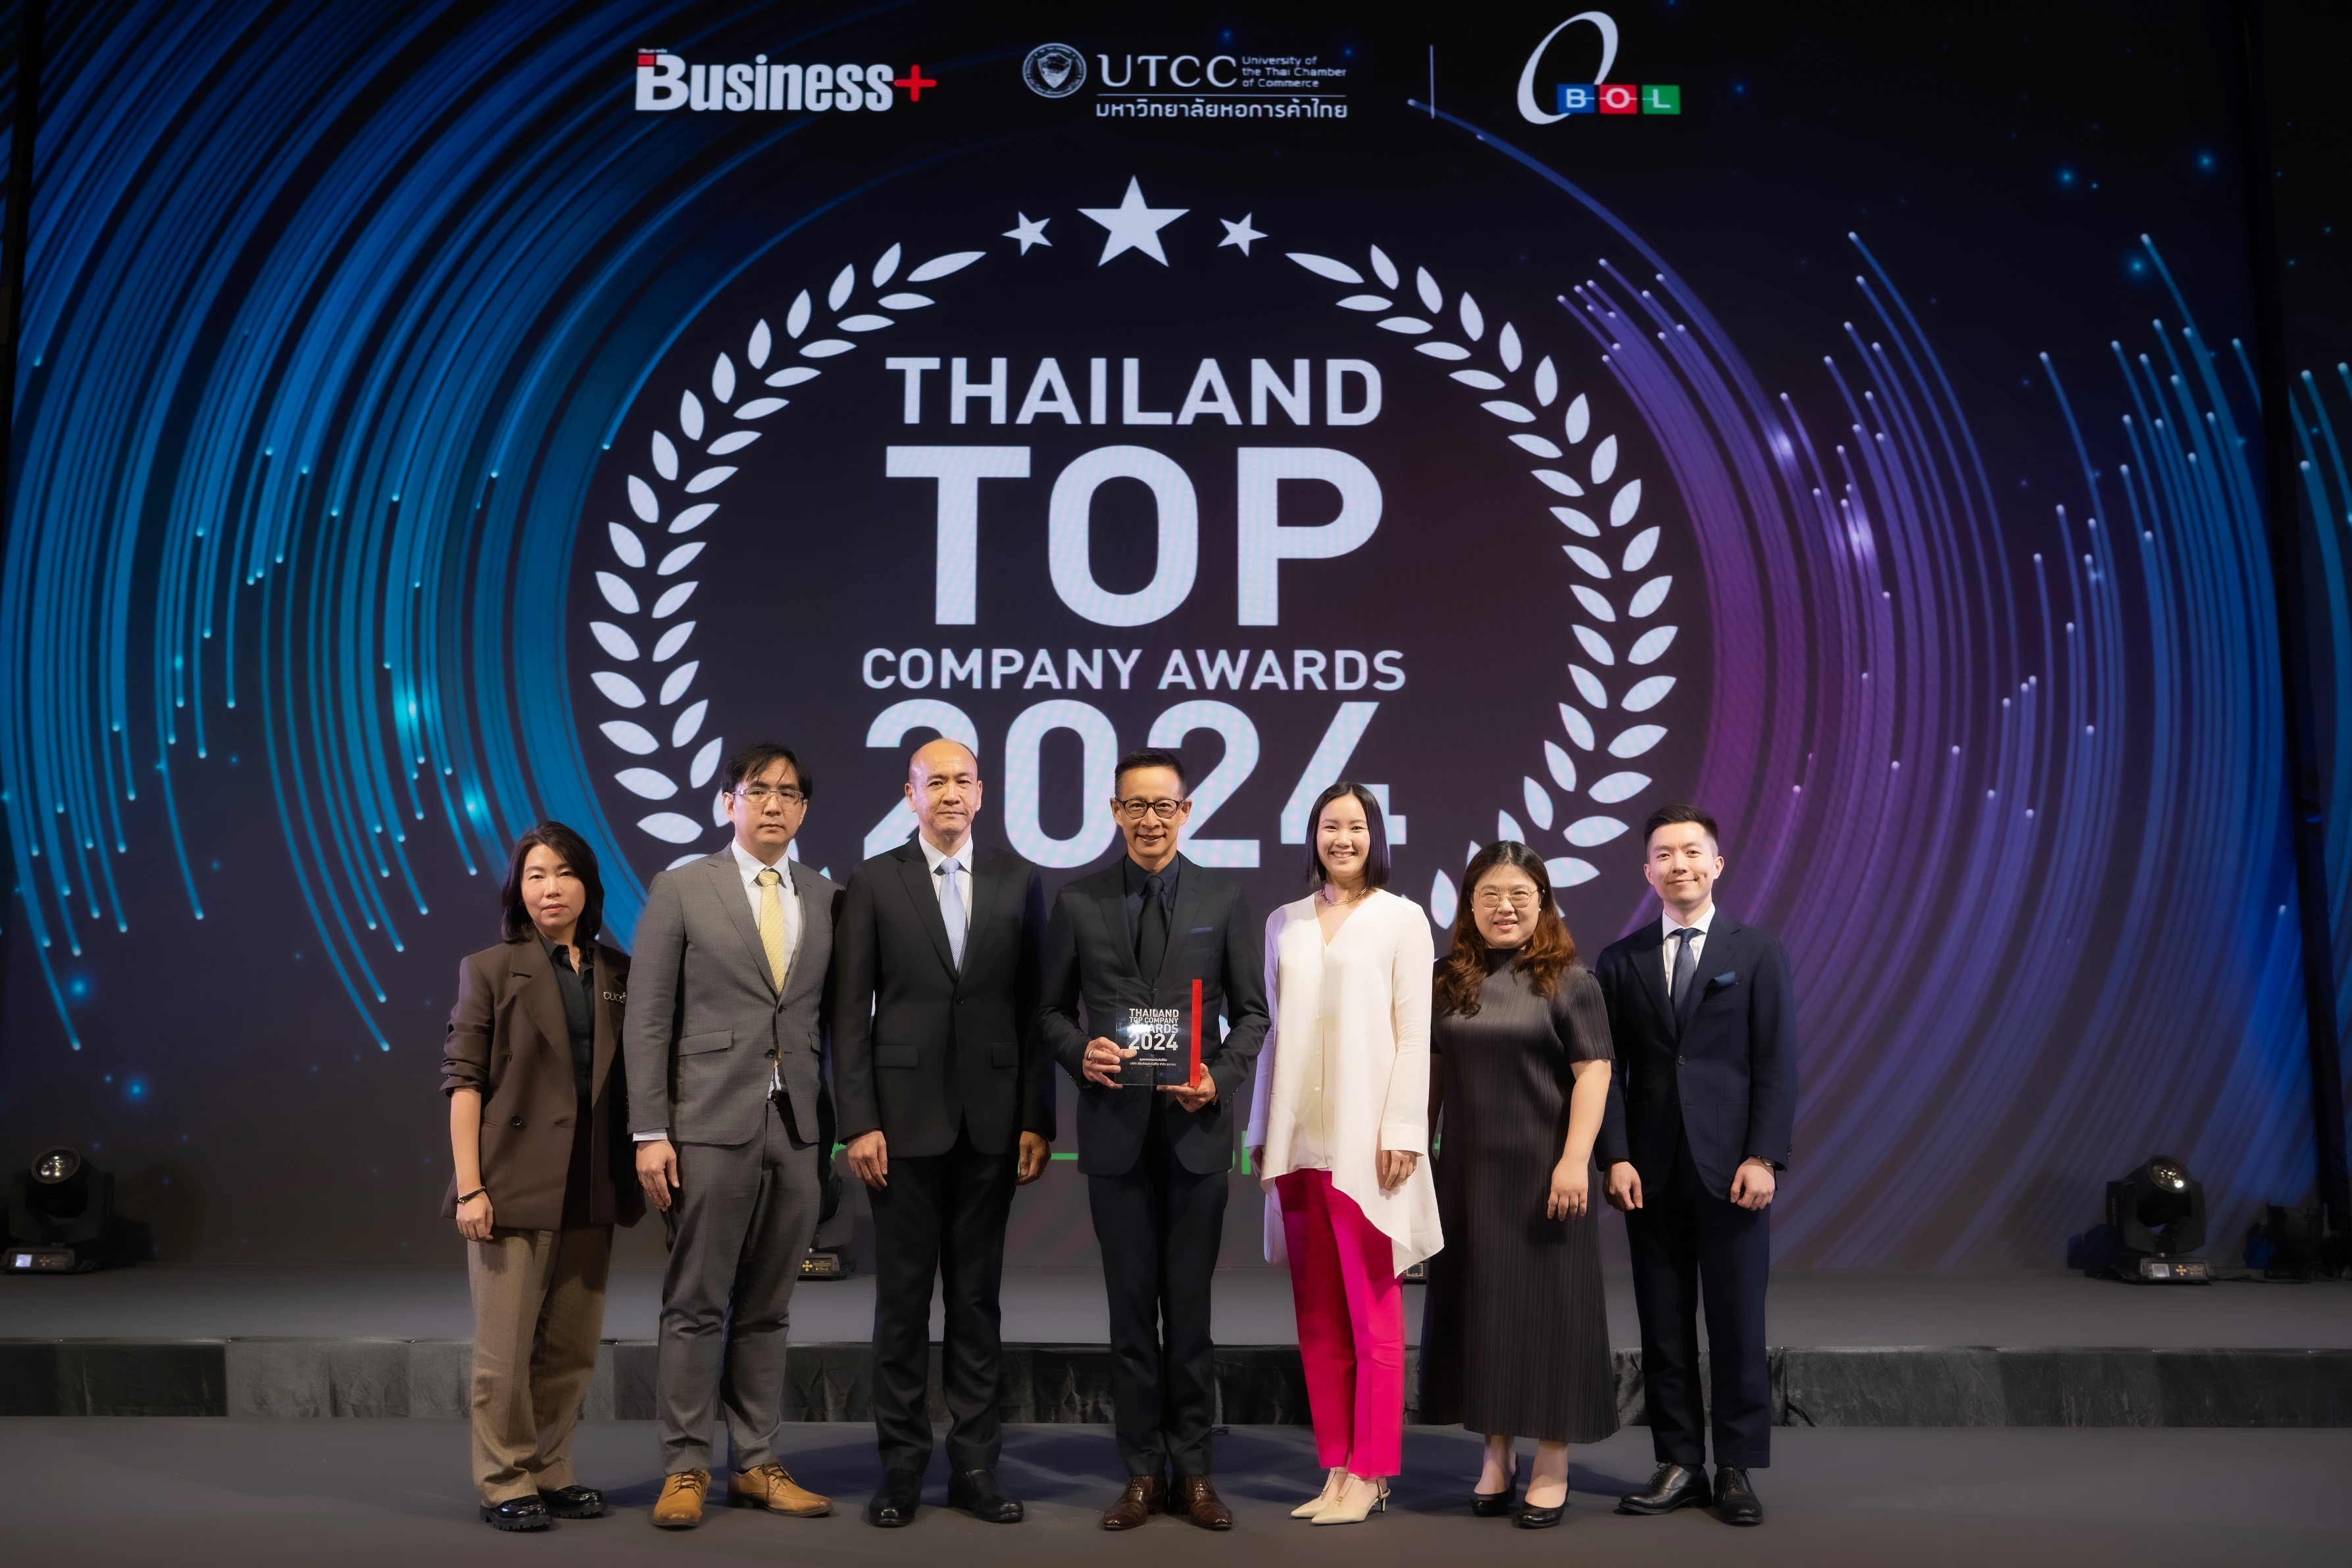 เมืองไทยประกันชีวิต รับรางวัลสุดยอดองค์กรธุรกิจไทย “THAILAND TOP COMPANY AWARDS 2024” ต่อเนื่องปีที่ 6